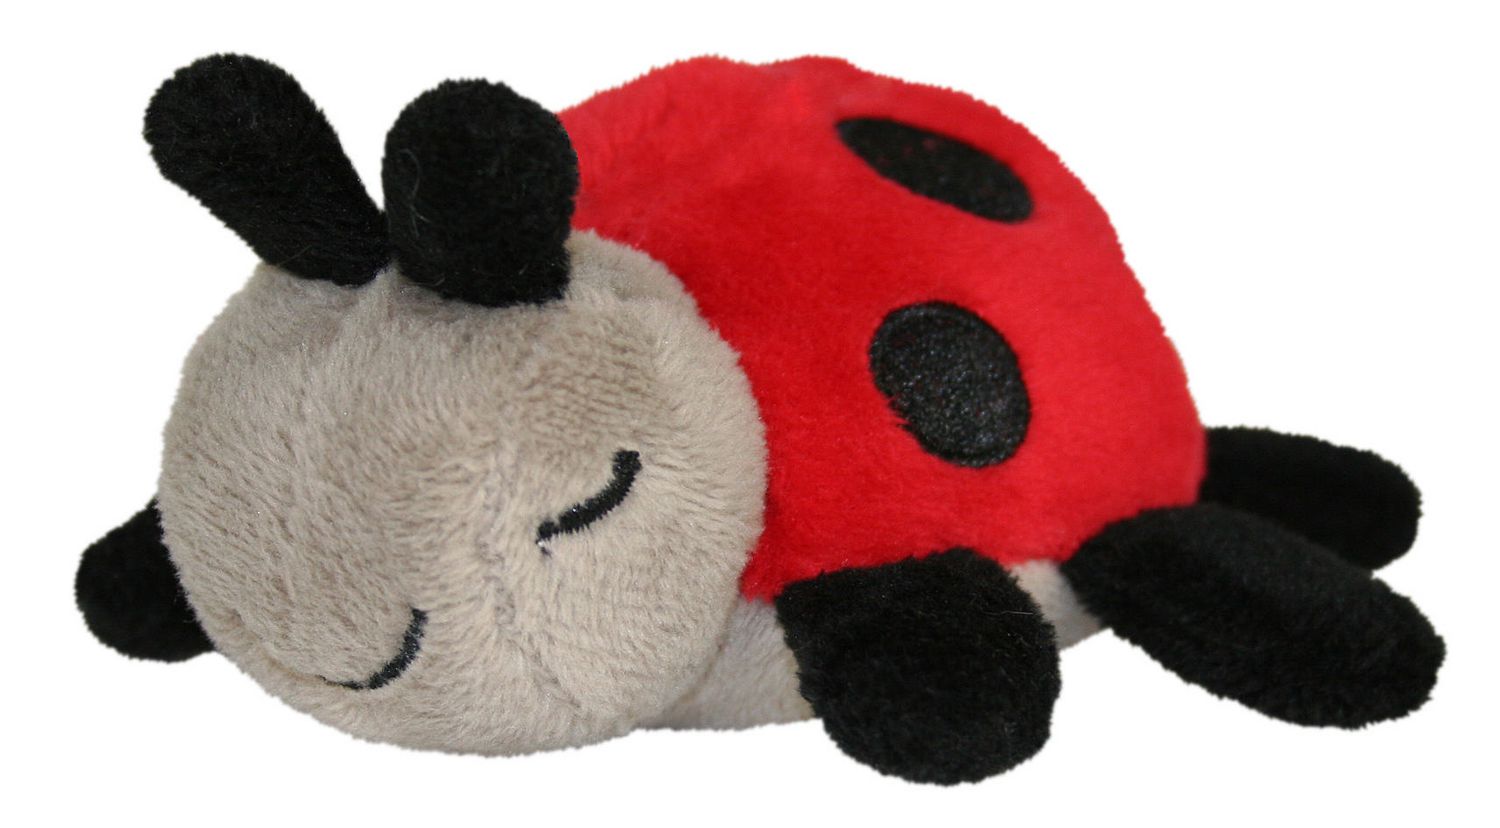 ladybug plush toy